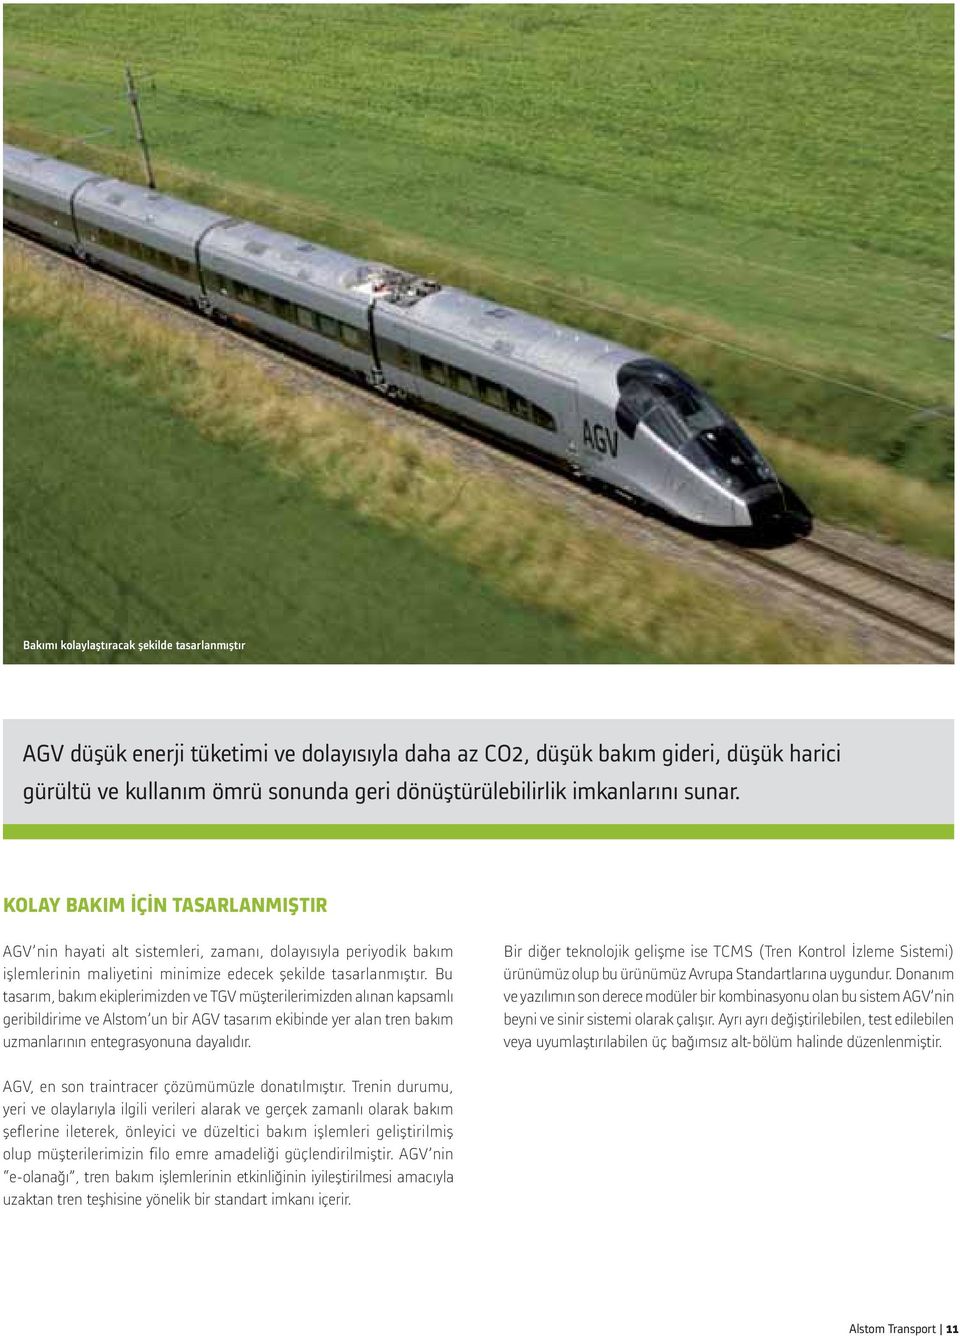 Bu tasarım, bakım ekiplerimizden ve TGV müşterilerimizden alınan kapsamlı geribildirime ve Alstom un bir AGV tasarım ekibinde yer alan tren bakım uzmanlarının entegrasyonuna dayalıdır.